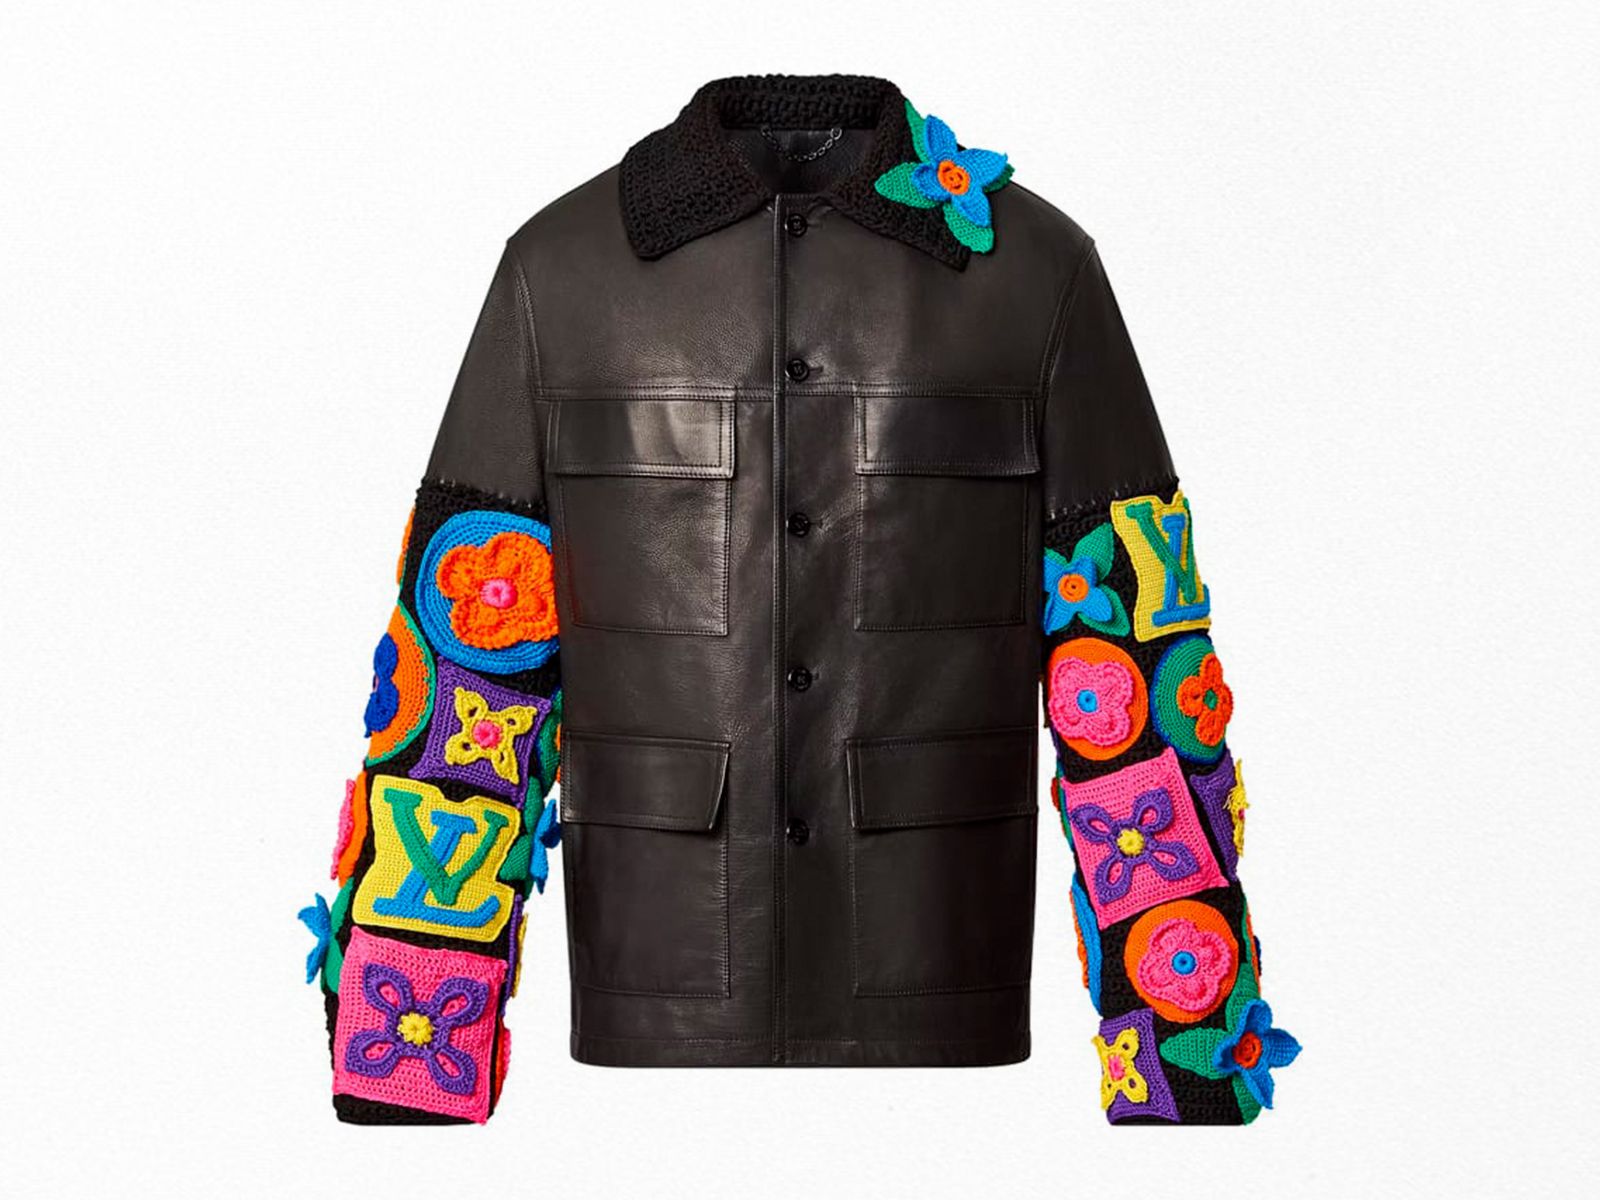 Todo sobre la exclusiva chaqueta de 35.000€ de Louis Vuitton